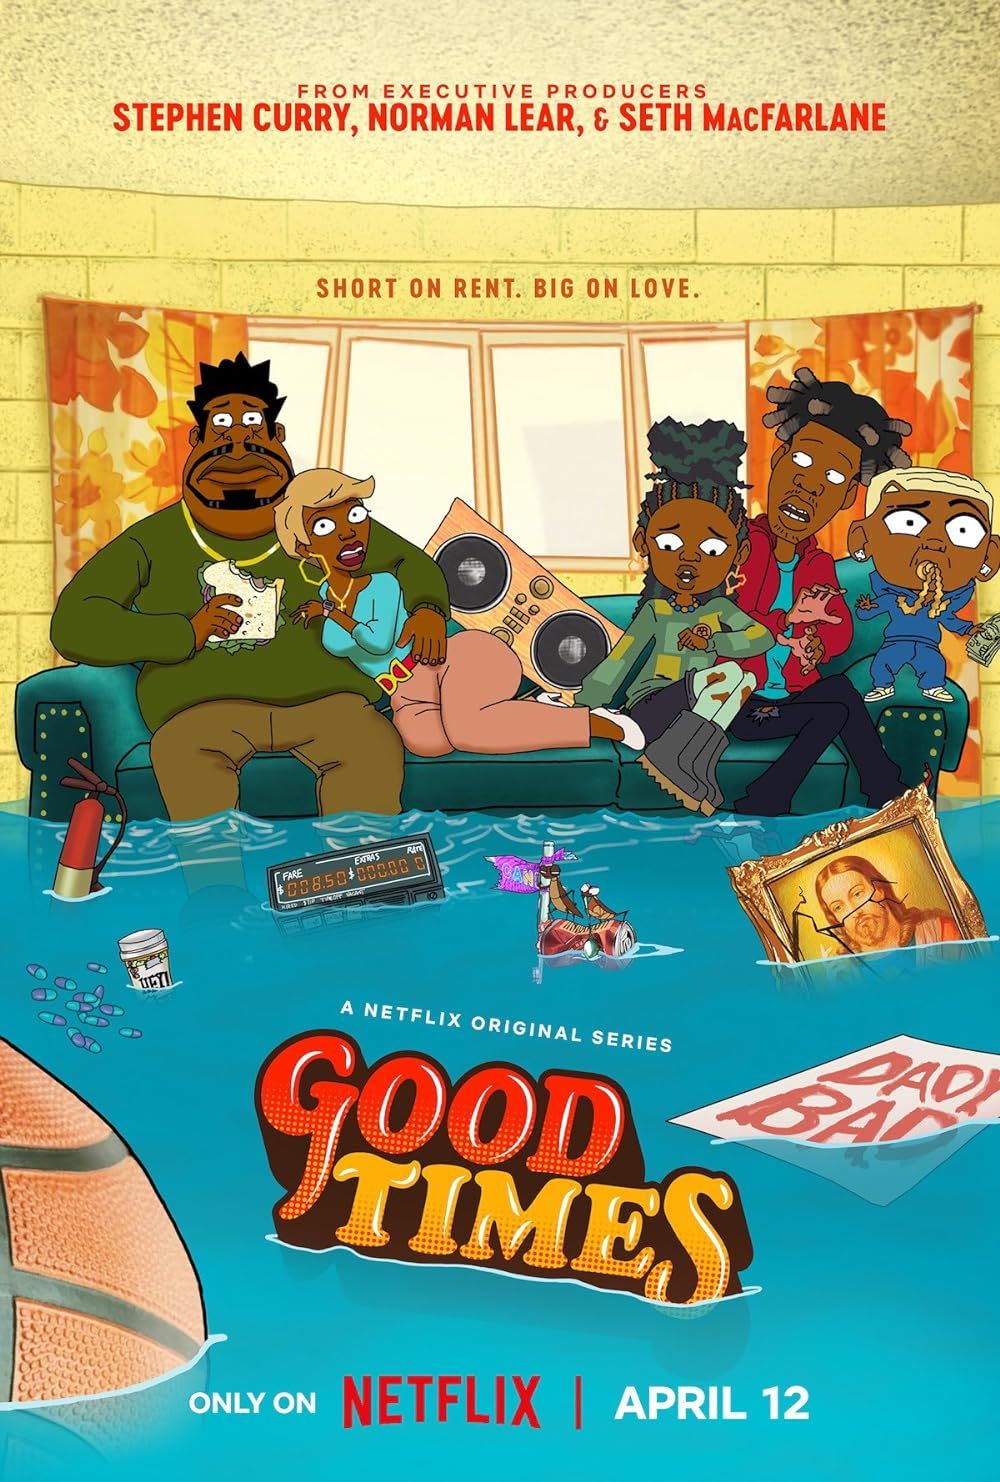 Pôster da série animada Good Times mostrando uma família sentada em um sofá em uma casa inundada